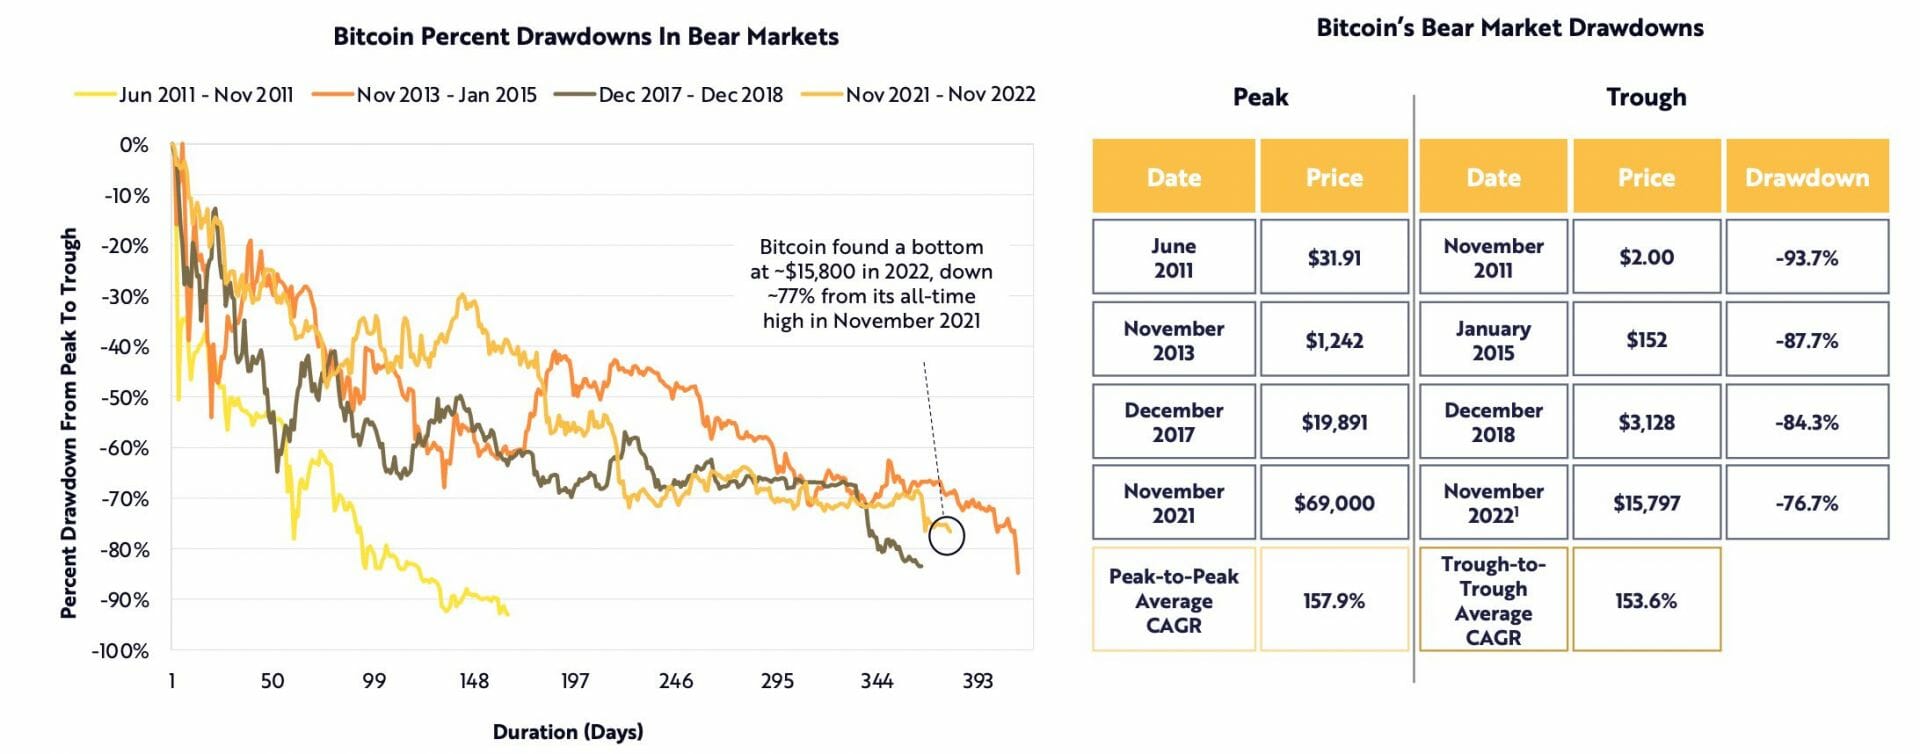 Lors du bear market en 2022, le cours a affiché un drawdown moins important que lors des autres bear markets. 